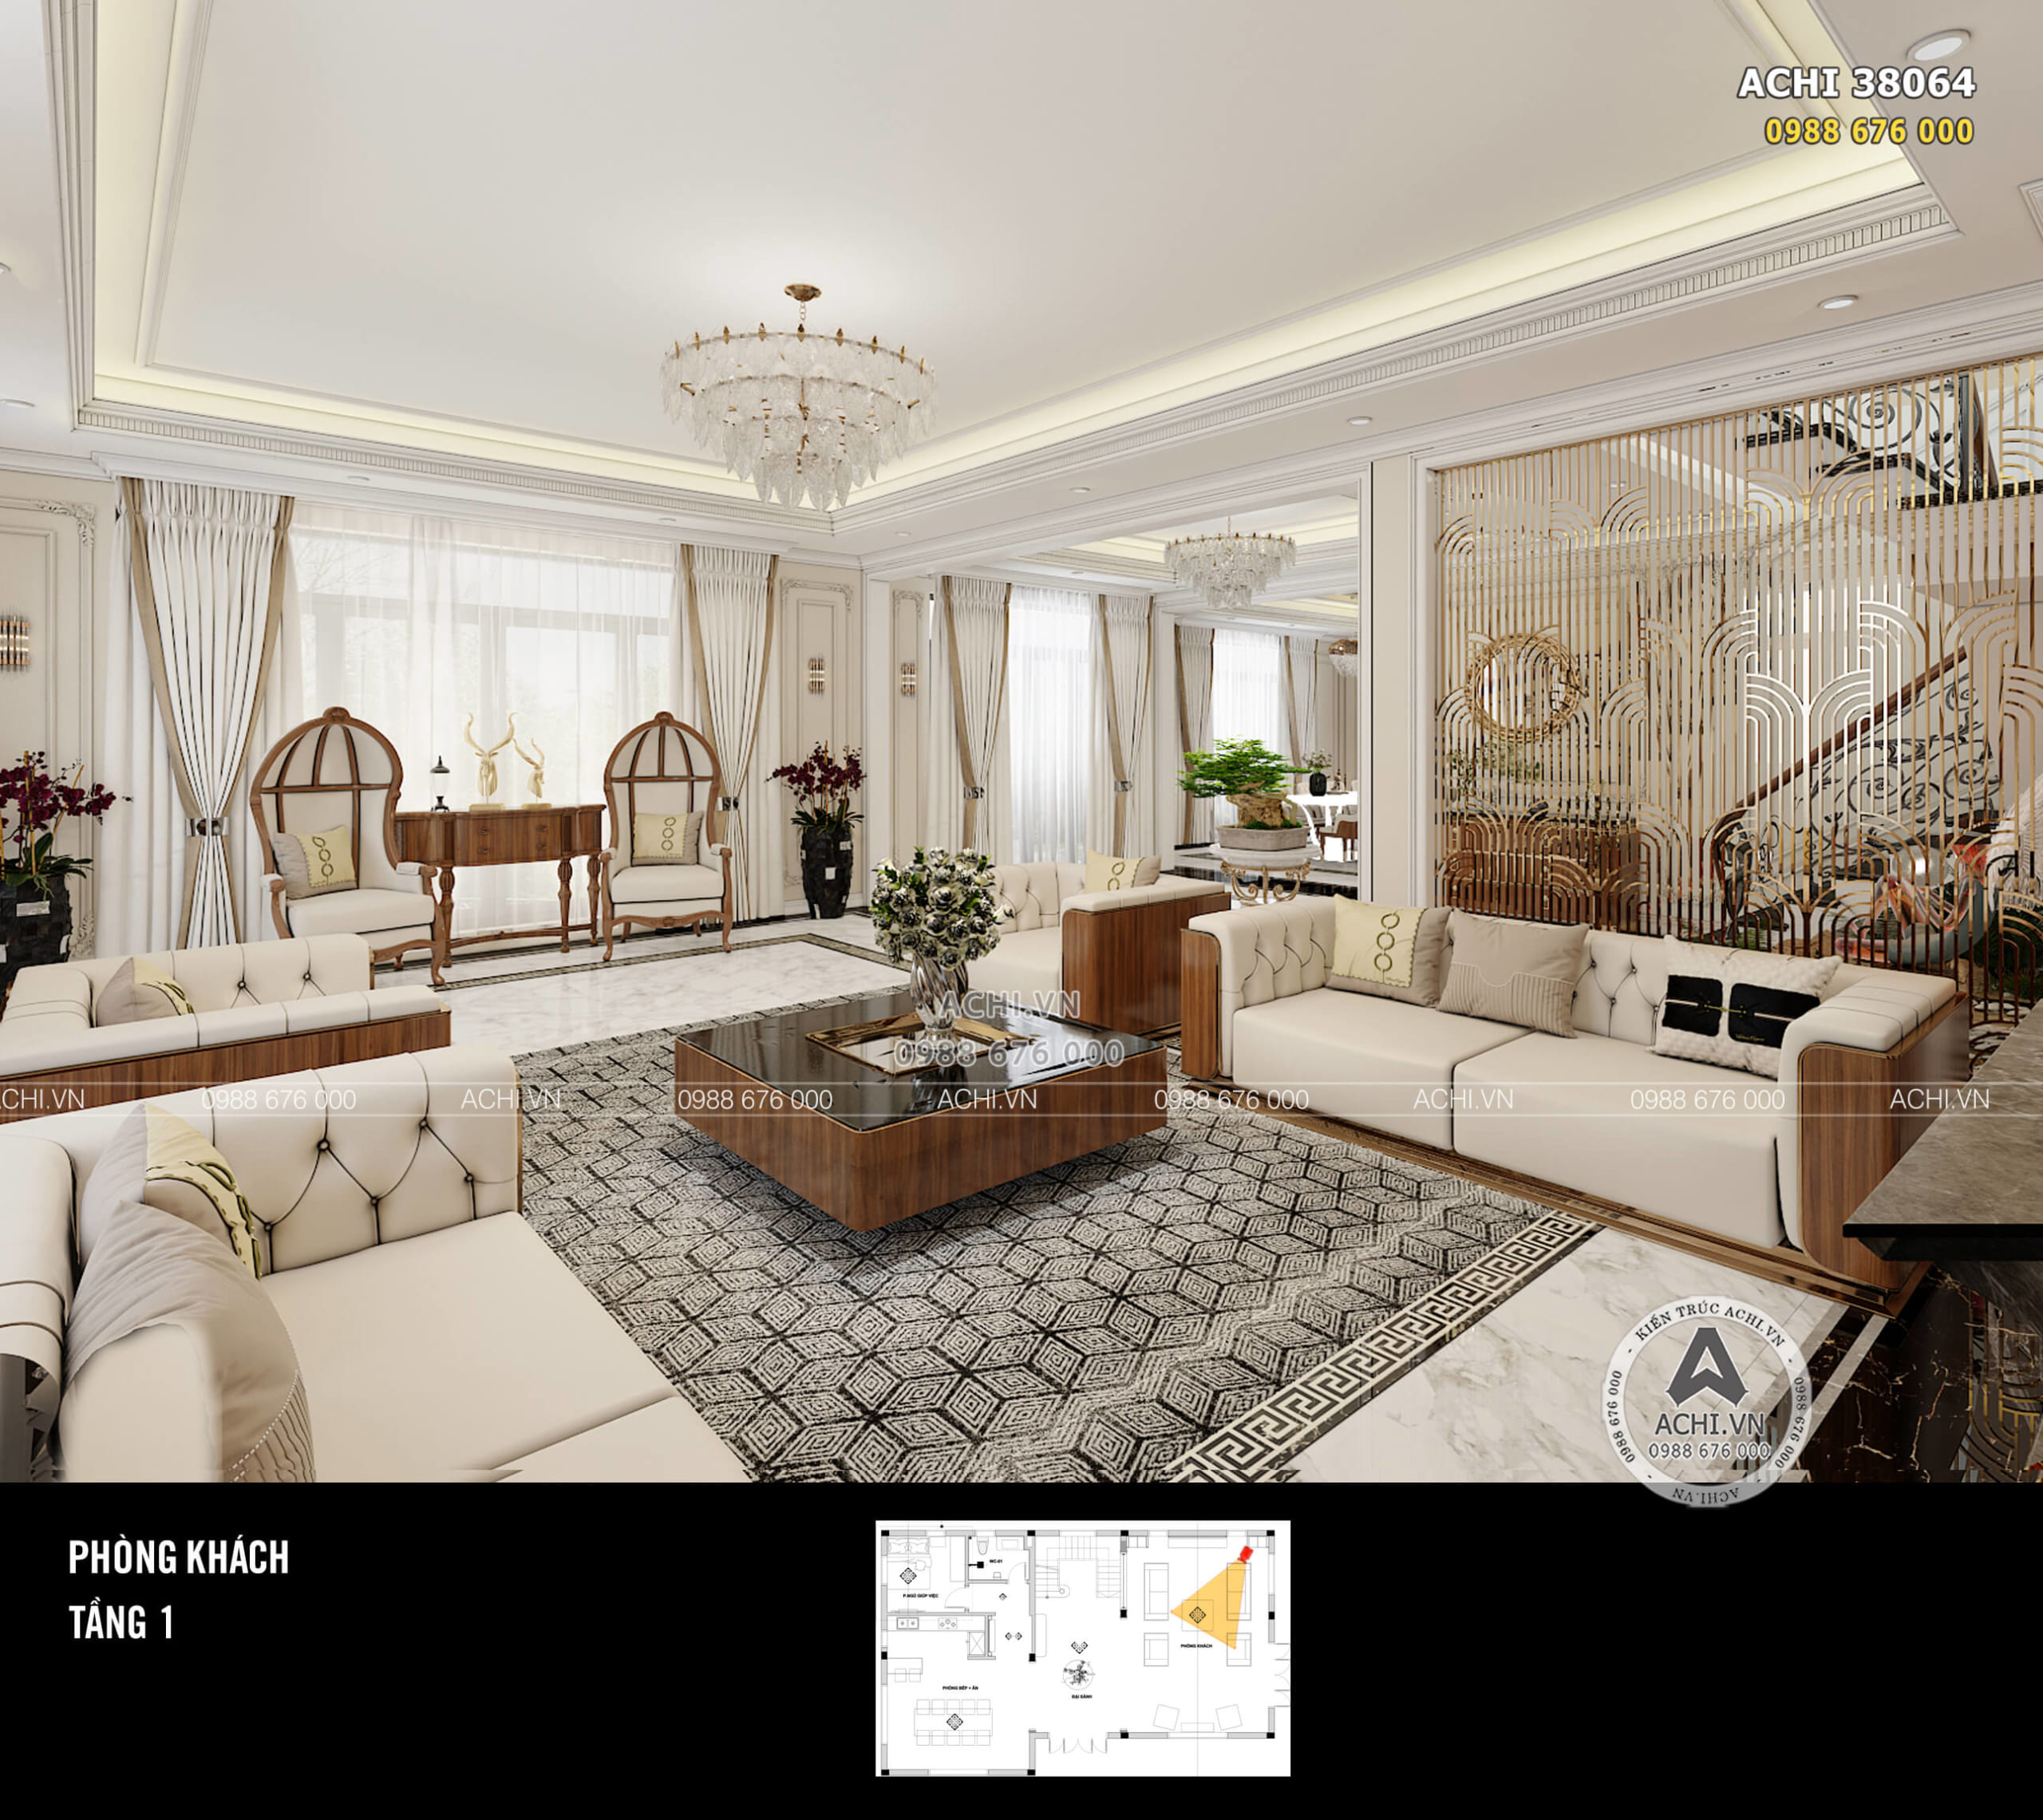 Phòng khách được thiết kế với những khung cửa kính lớn giúp tận dụng tối đa ánh sáng tự nhiên